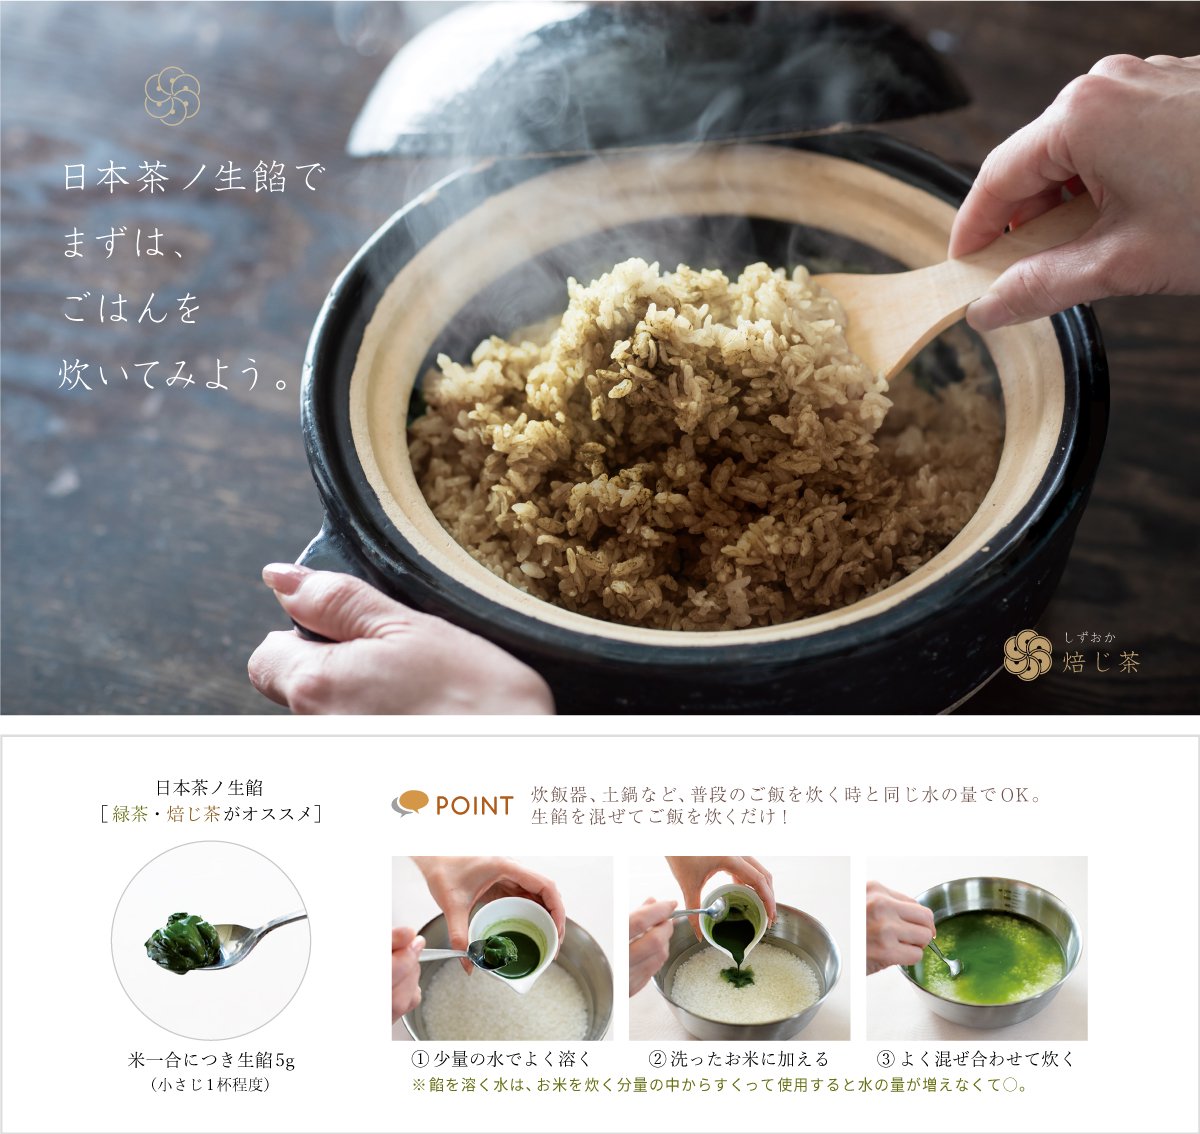 静岡産茶葉のみで特殊加工しペースト状にしたナチュラルな日本茶ノ生餡、しずおか焙じ茶ノ生餡。おいしい日本茶研究所。